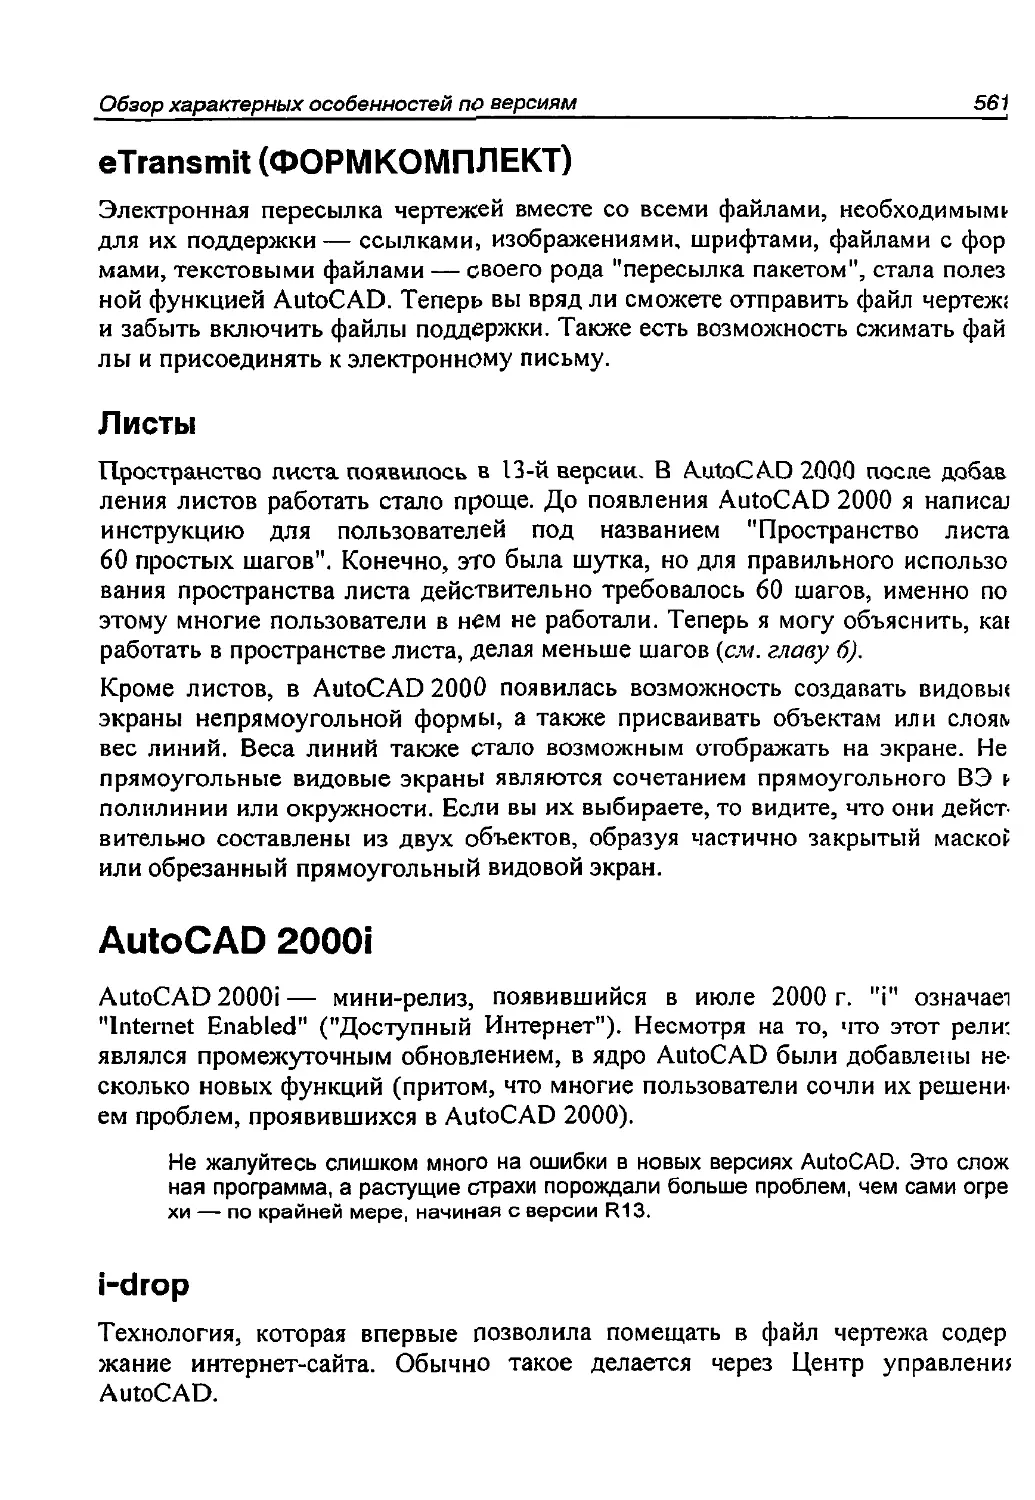 Листы
AutoCAD 2000i
i-drop